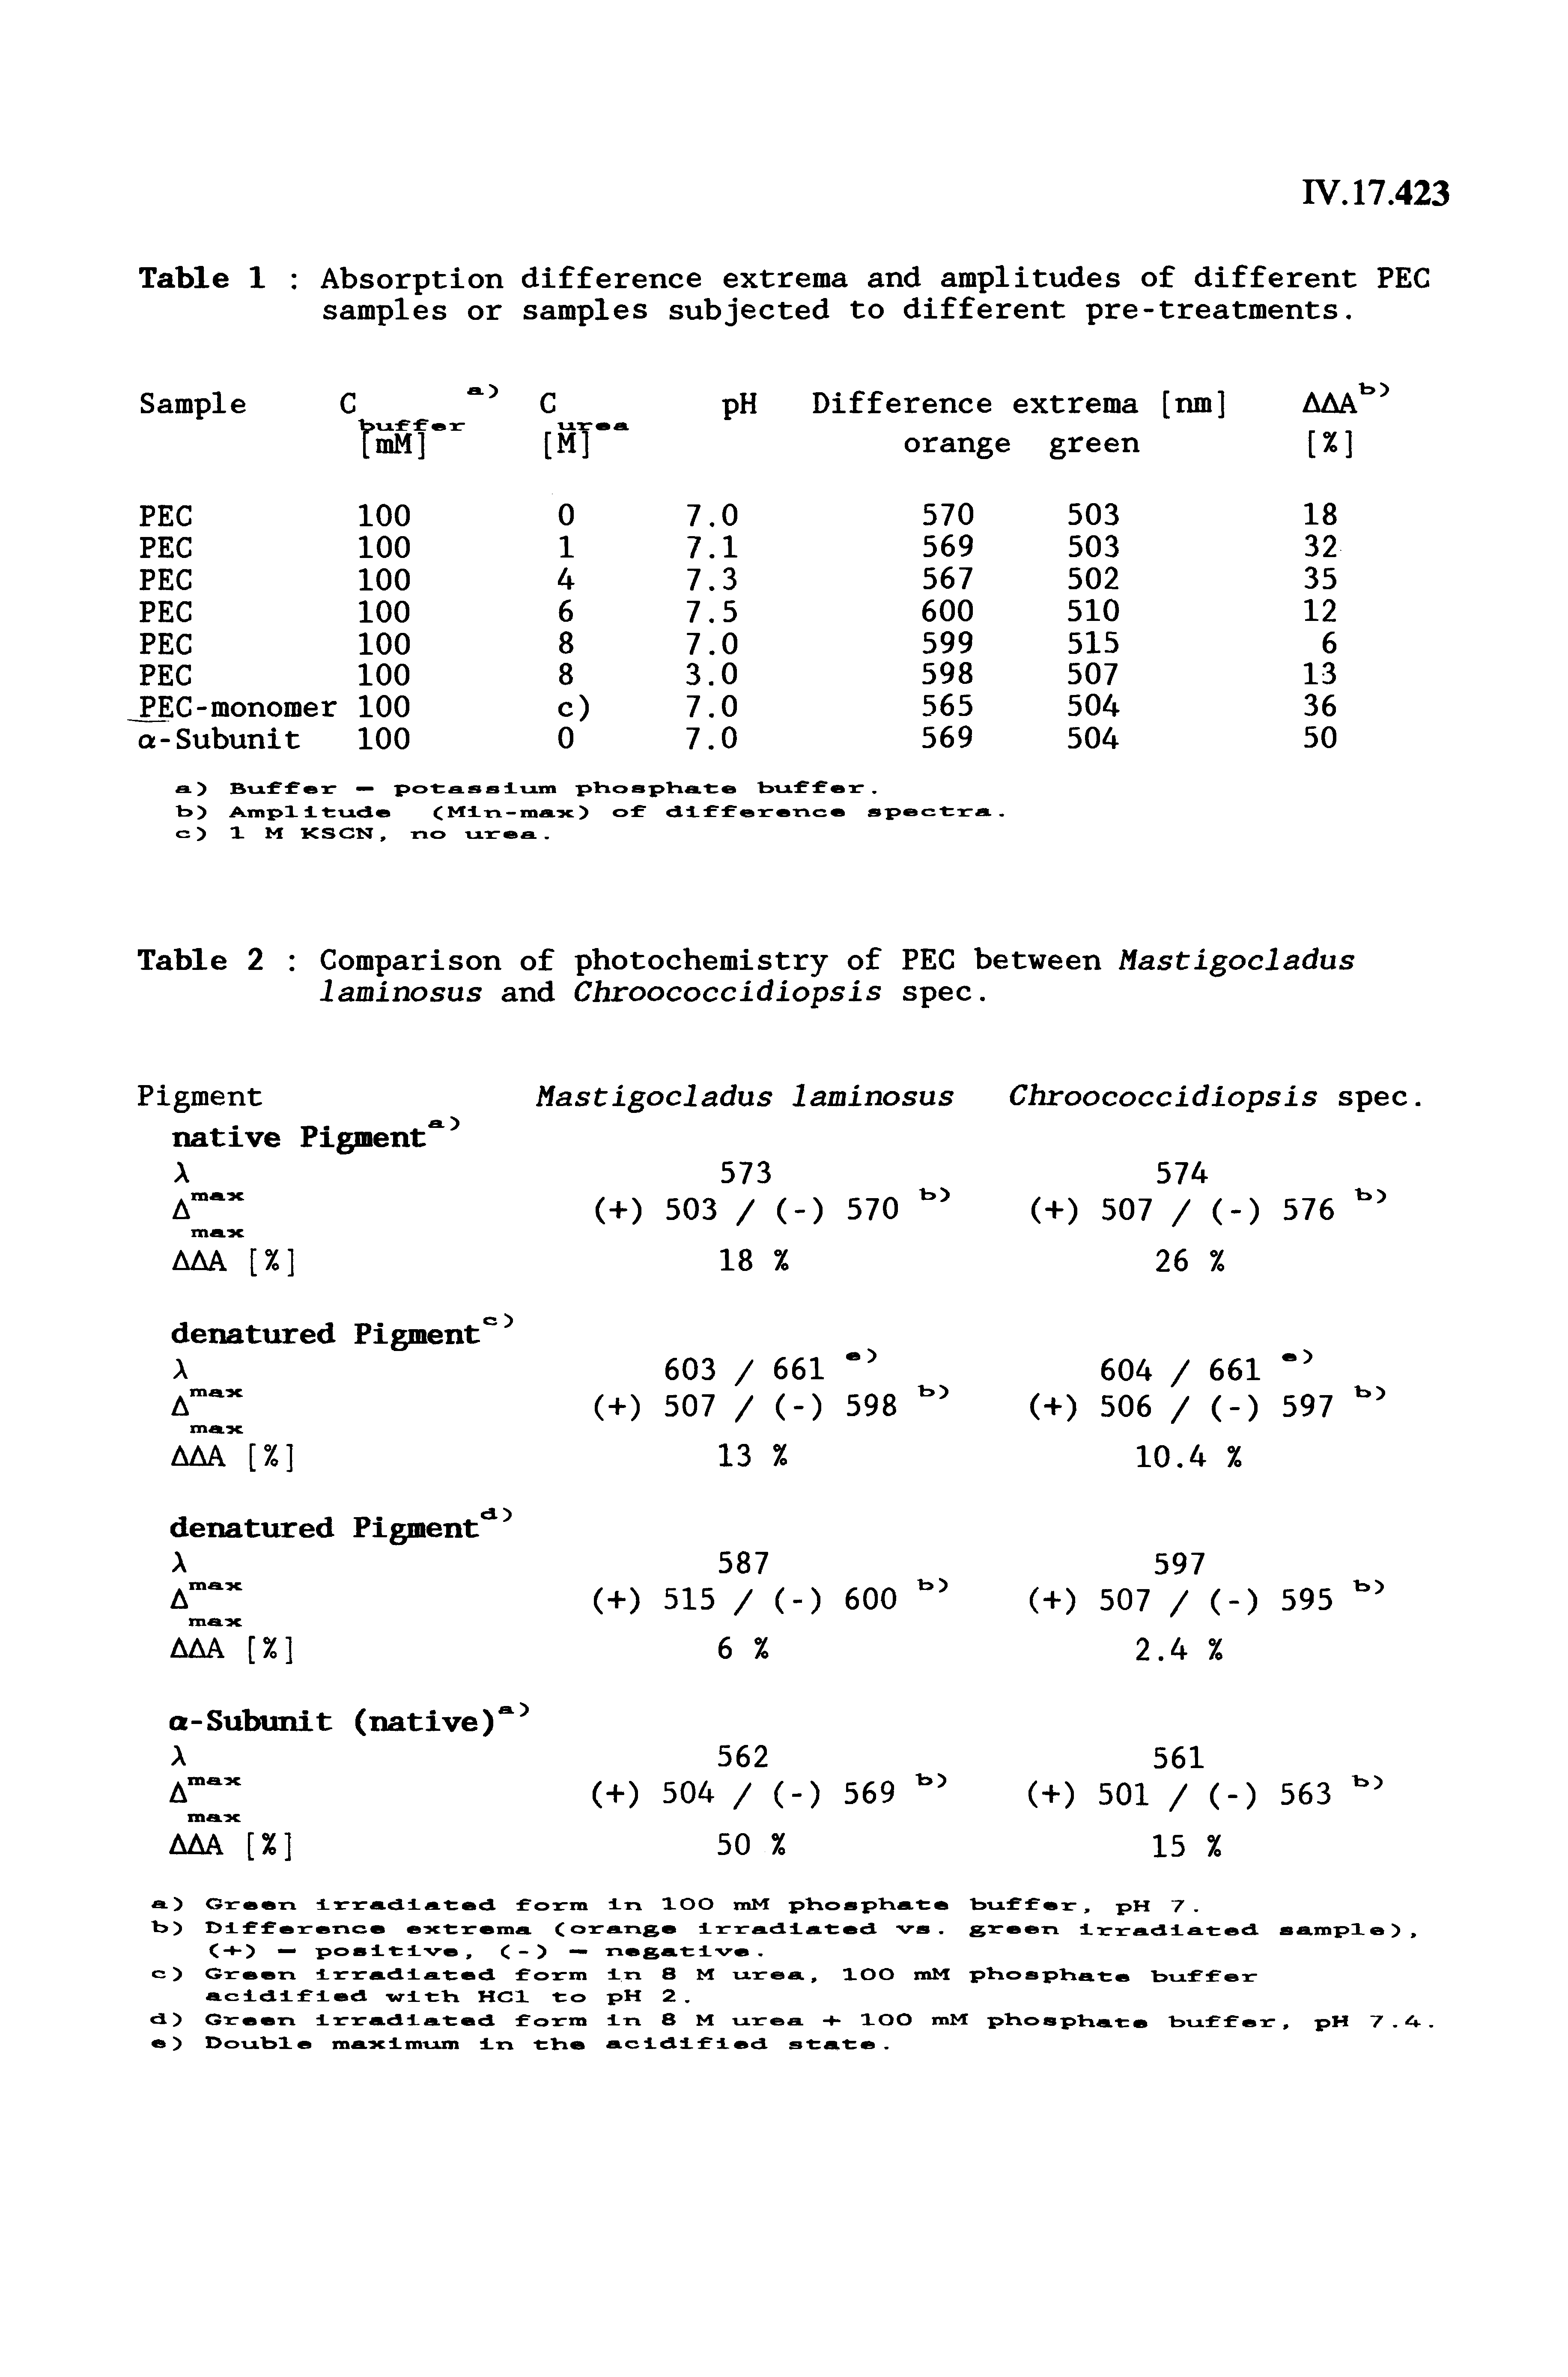 Table 2 Comparison of photochemistry of PEC between Mastigocladus laminosus and Chroococcidiopsis spec.